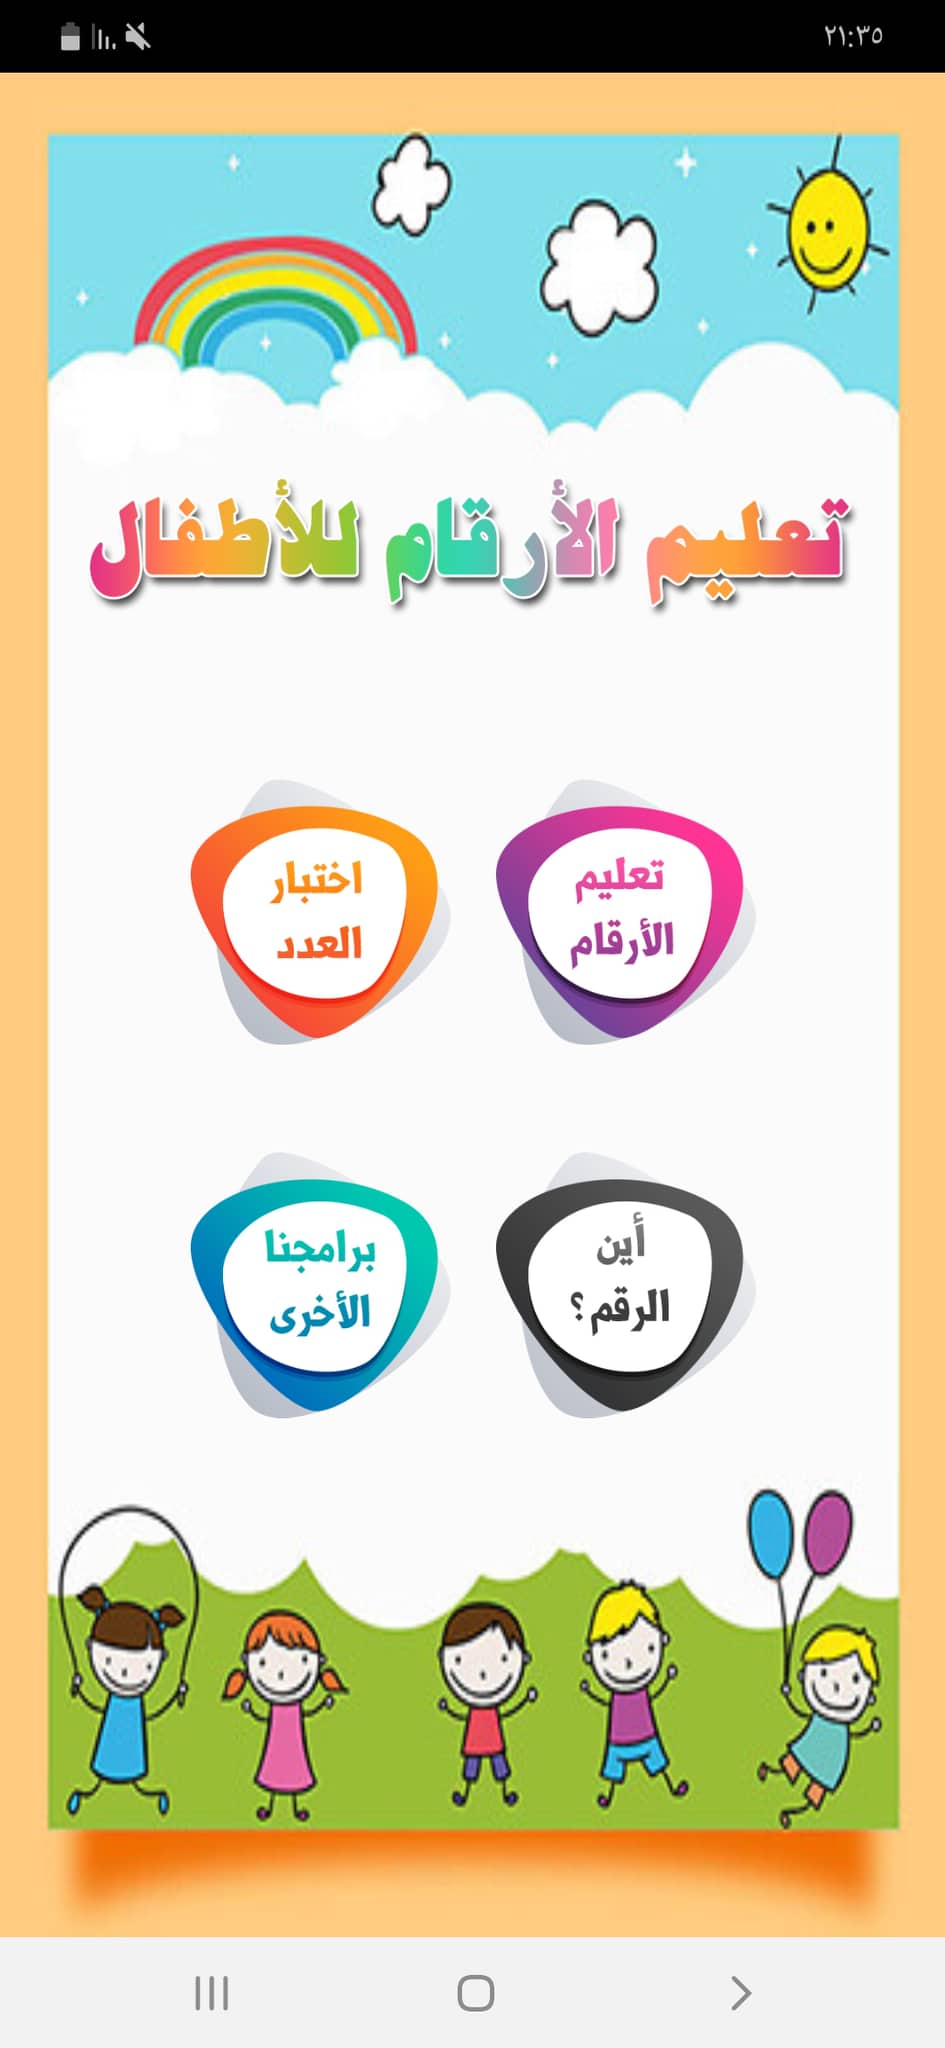 الصفحة الرئيسية لتطبيق الأرقام العربية